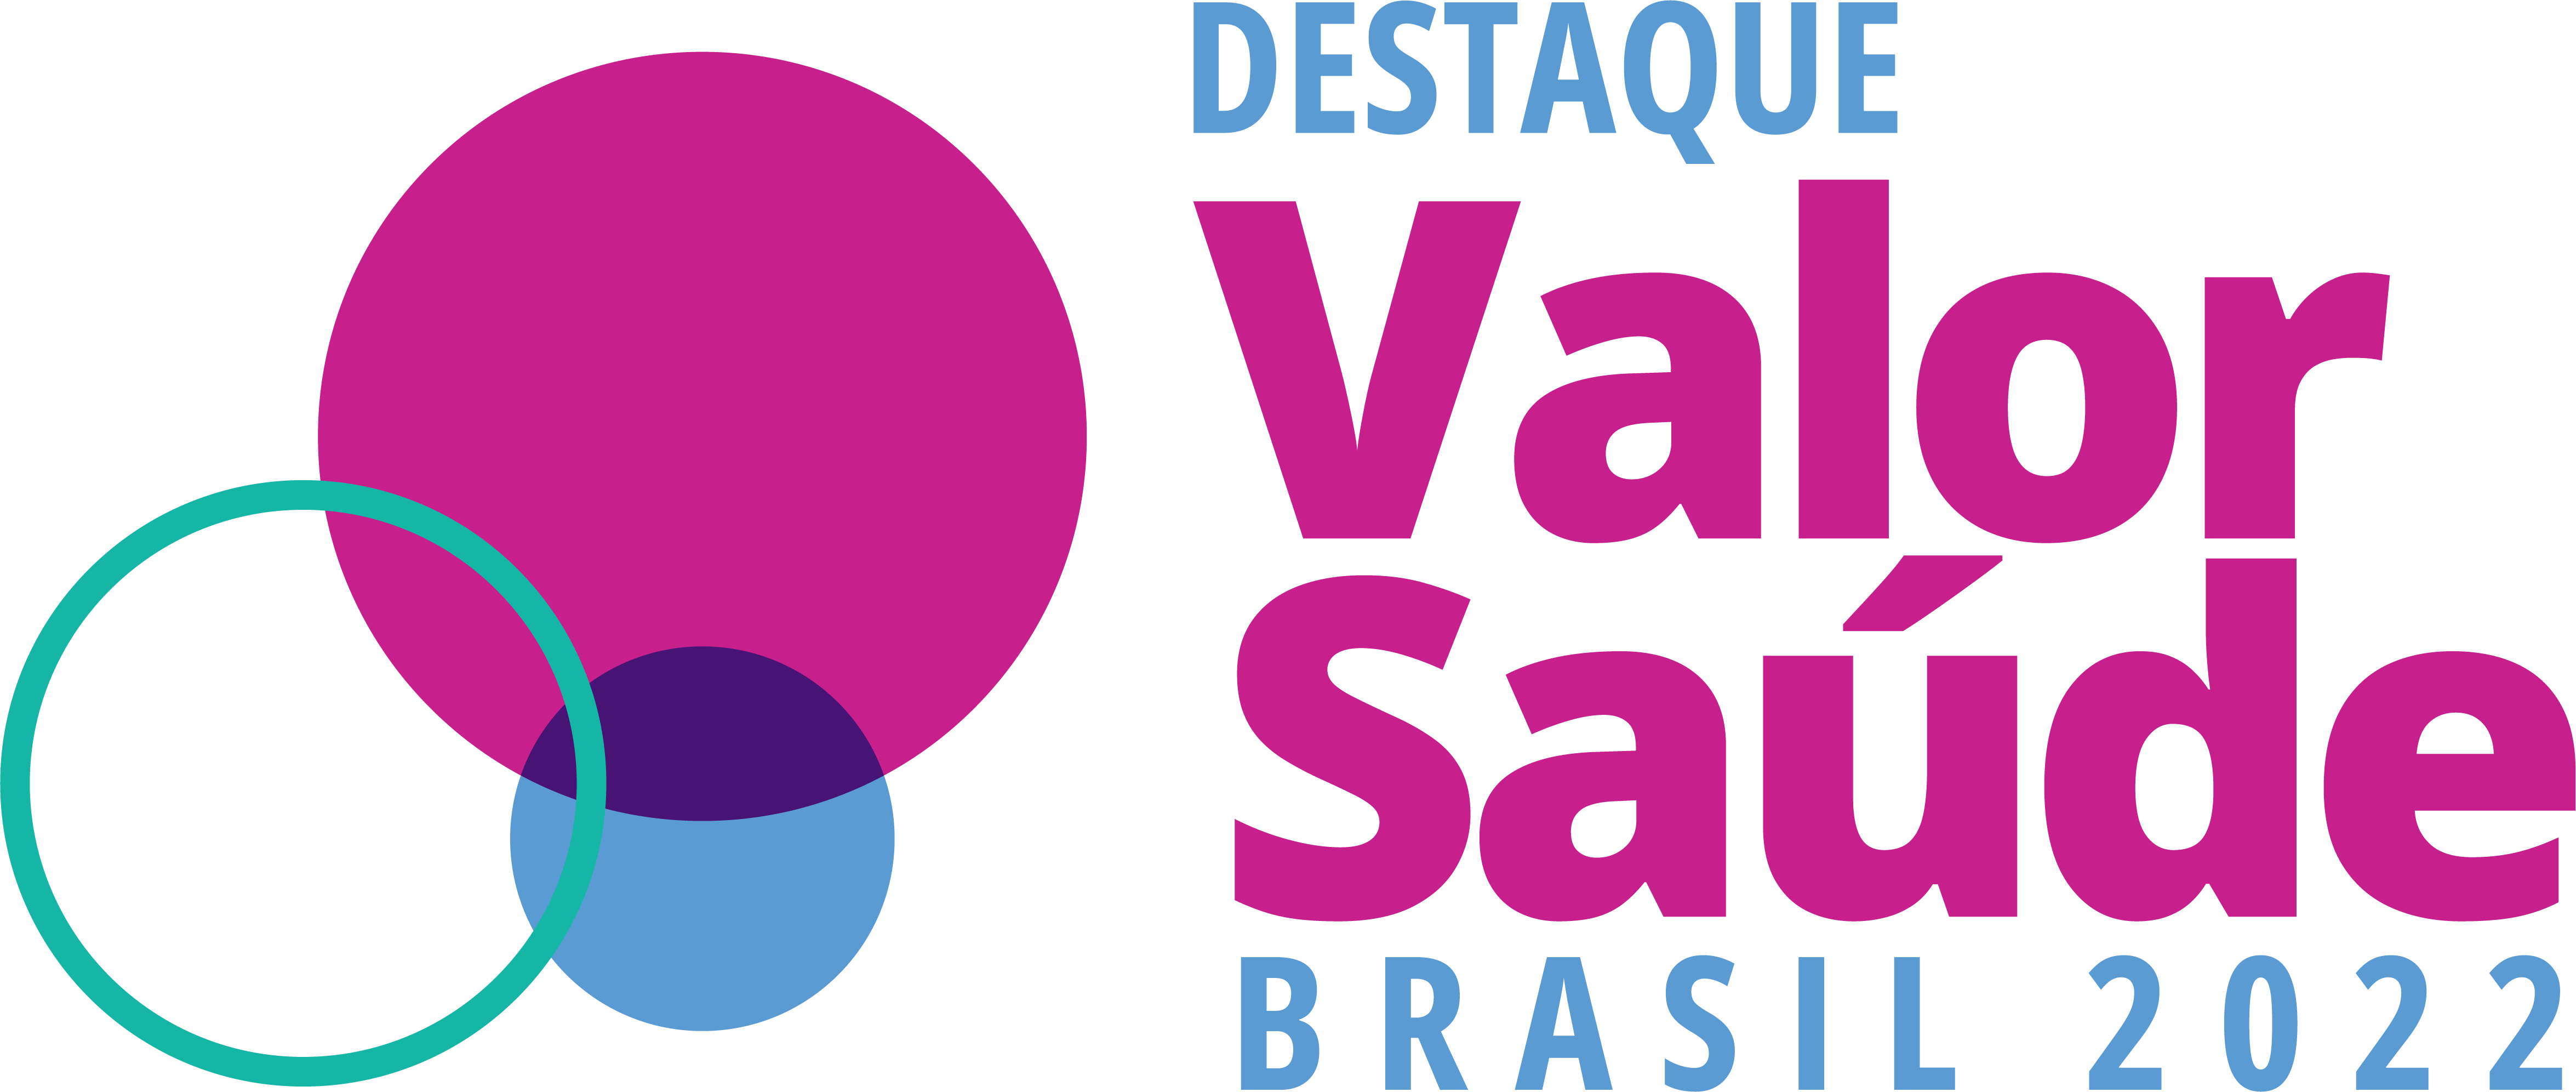 destaque valor e saude brasil 2022